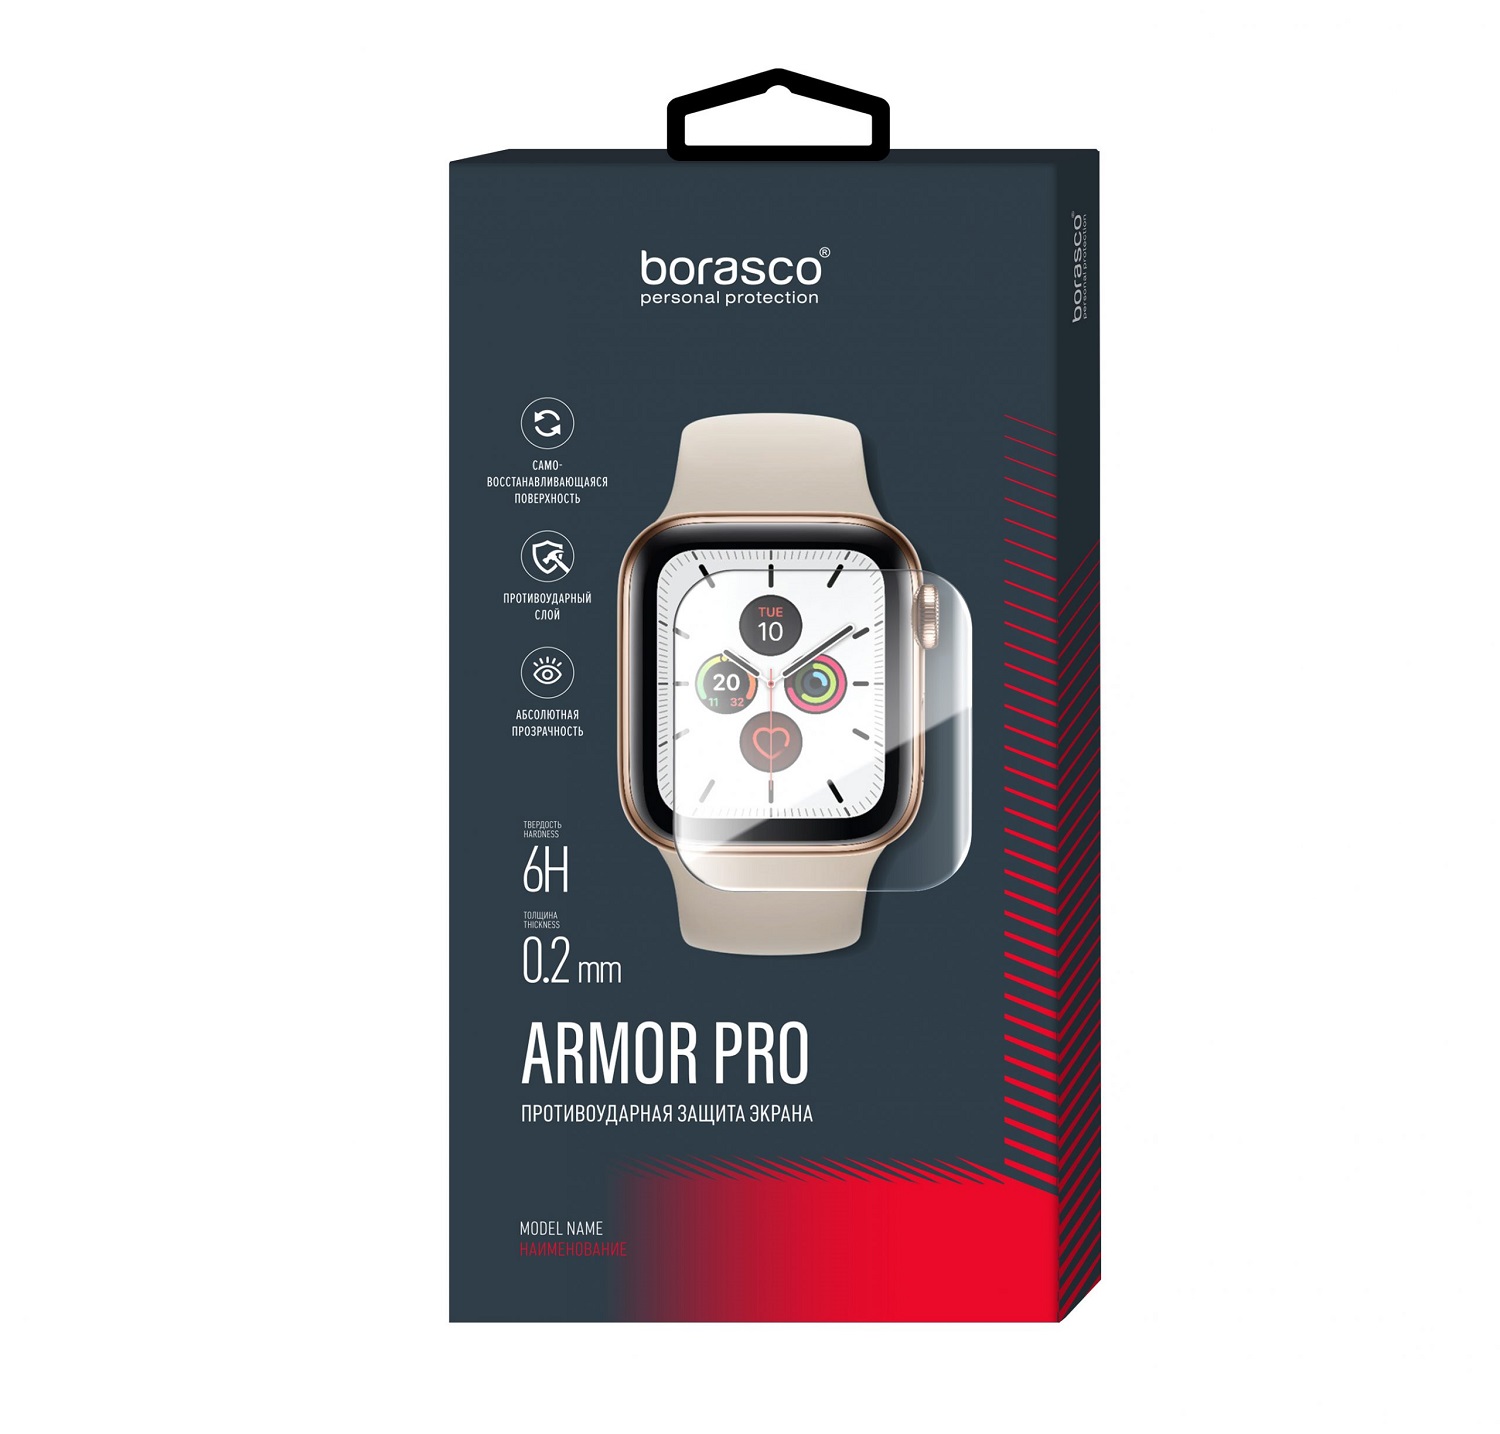 Защита экрана BoraSCO Armor Pro для Xiaomi Mi Watch защита экрана borasco armor pro для aimoto pro life